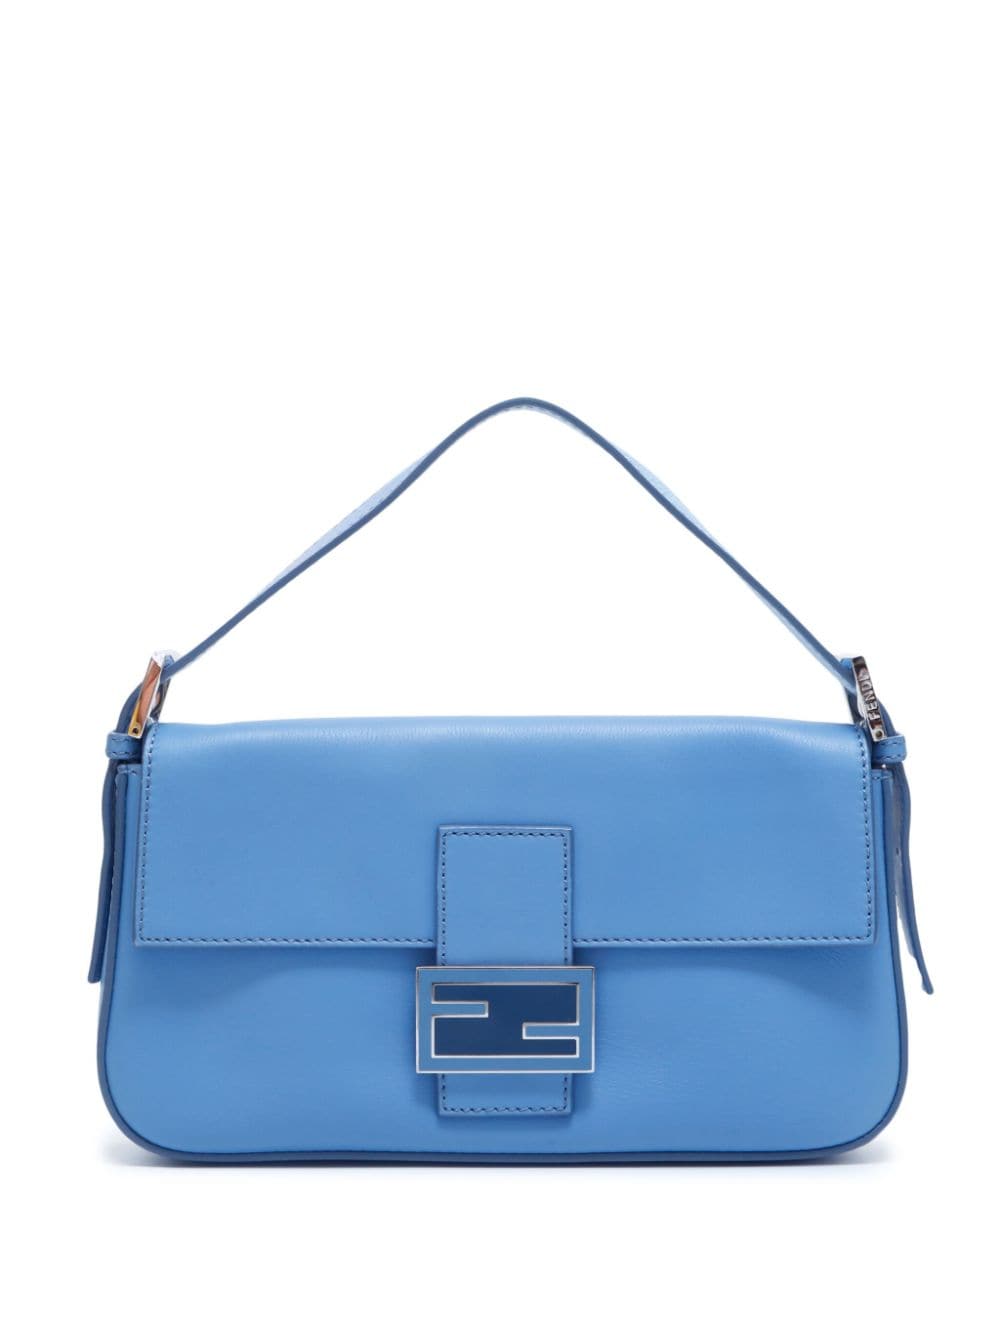 Pre-owned Fendi Baguette Leather Shoulder Bag In Blue